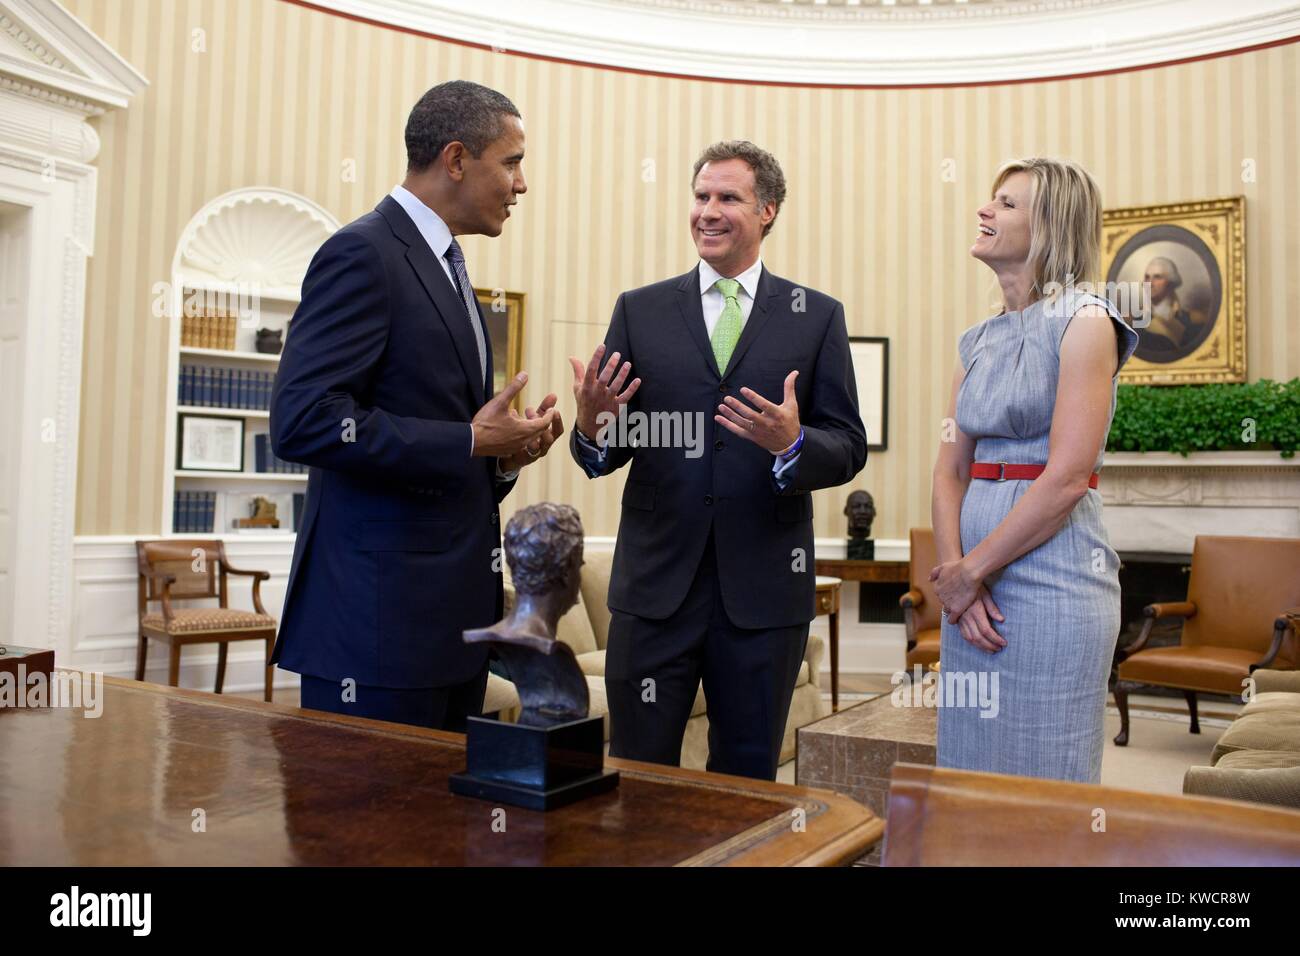 Präsident Barack Obama gratuliert Will Ferrell auf dem Gewinnen des Mark Twain Prize für die Amerikanischen Humor. Ferrell's Frau, Viveca Paulin, ist auf der rechten Seite. Oval Office, 21.10.2011. (BSLOC 2015 3 127) Stockfoto